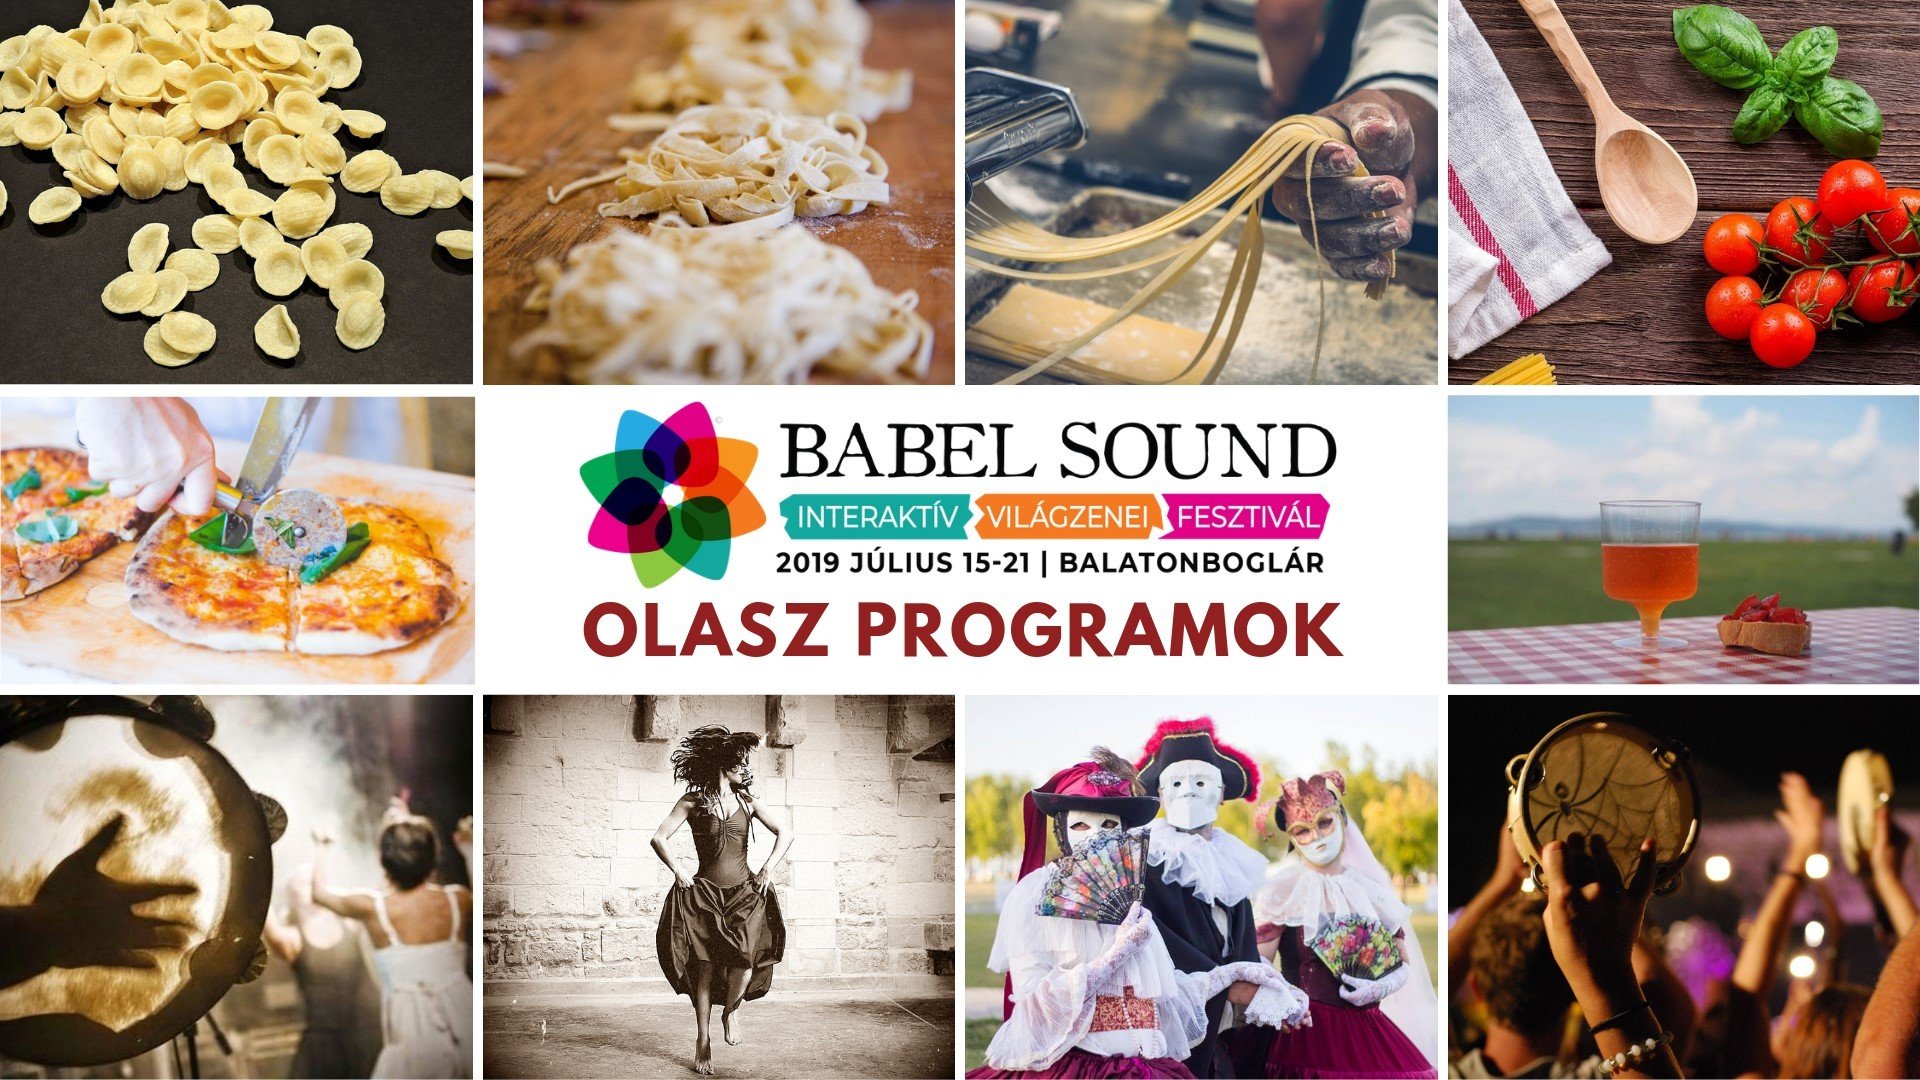 Július 15-én kezdődik a Babel Sound Világzenei Fesztivál Balatonbogláron